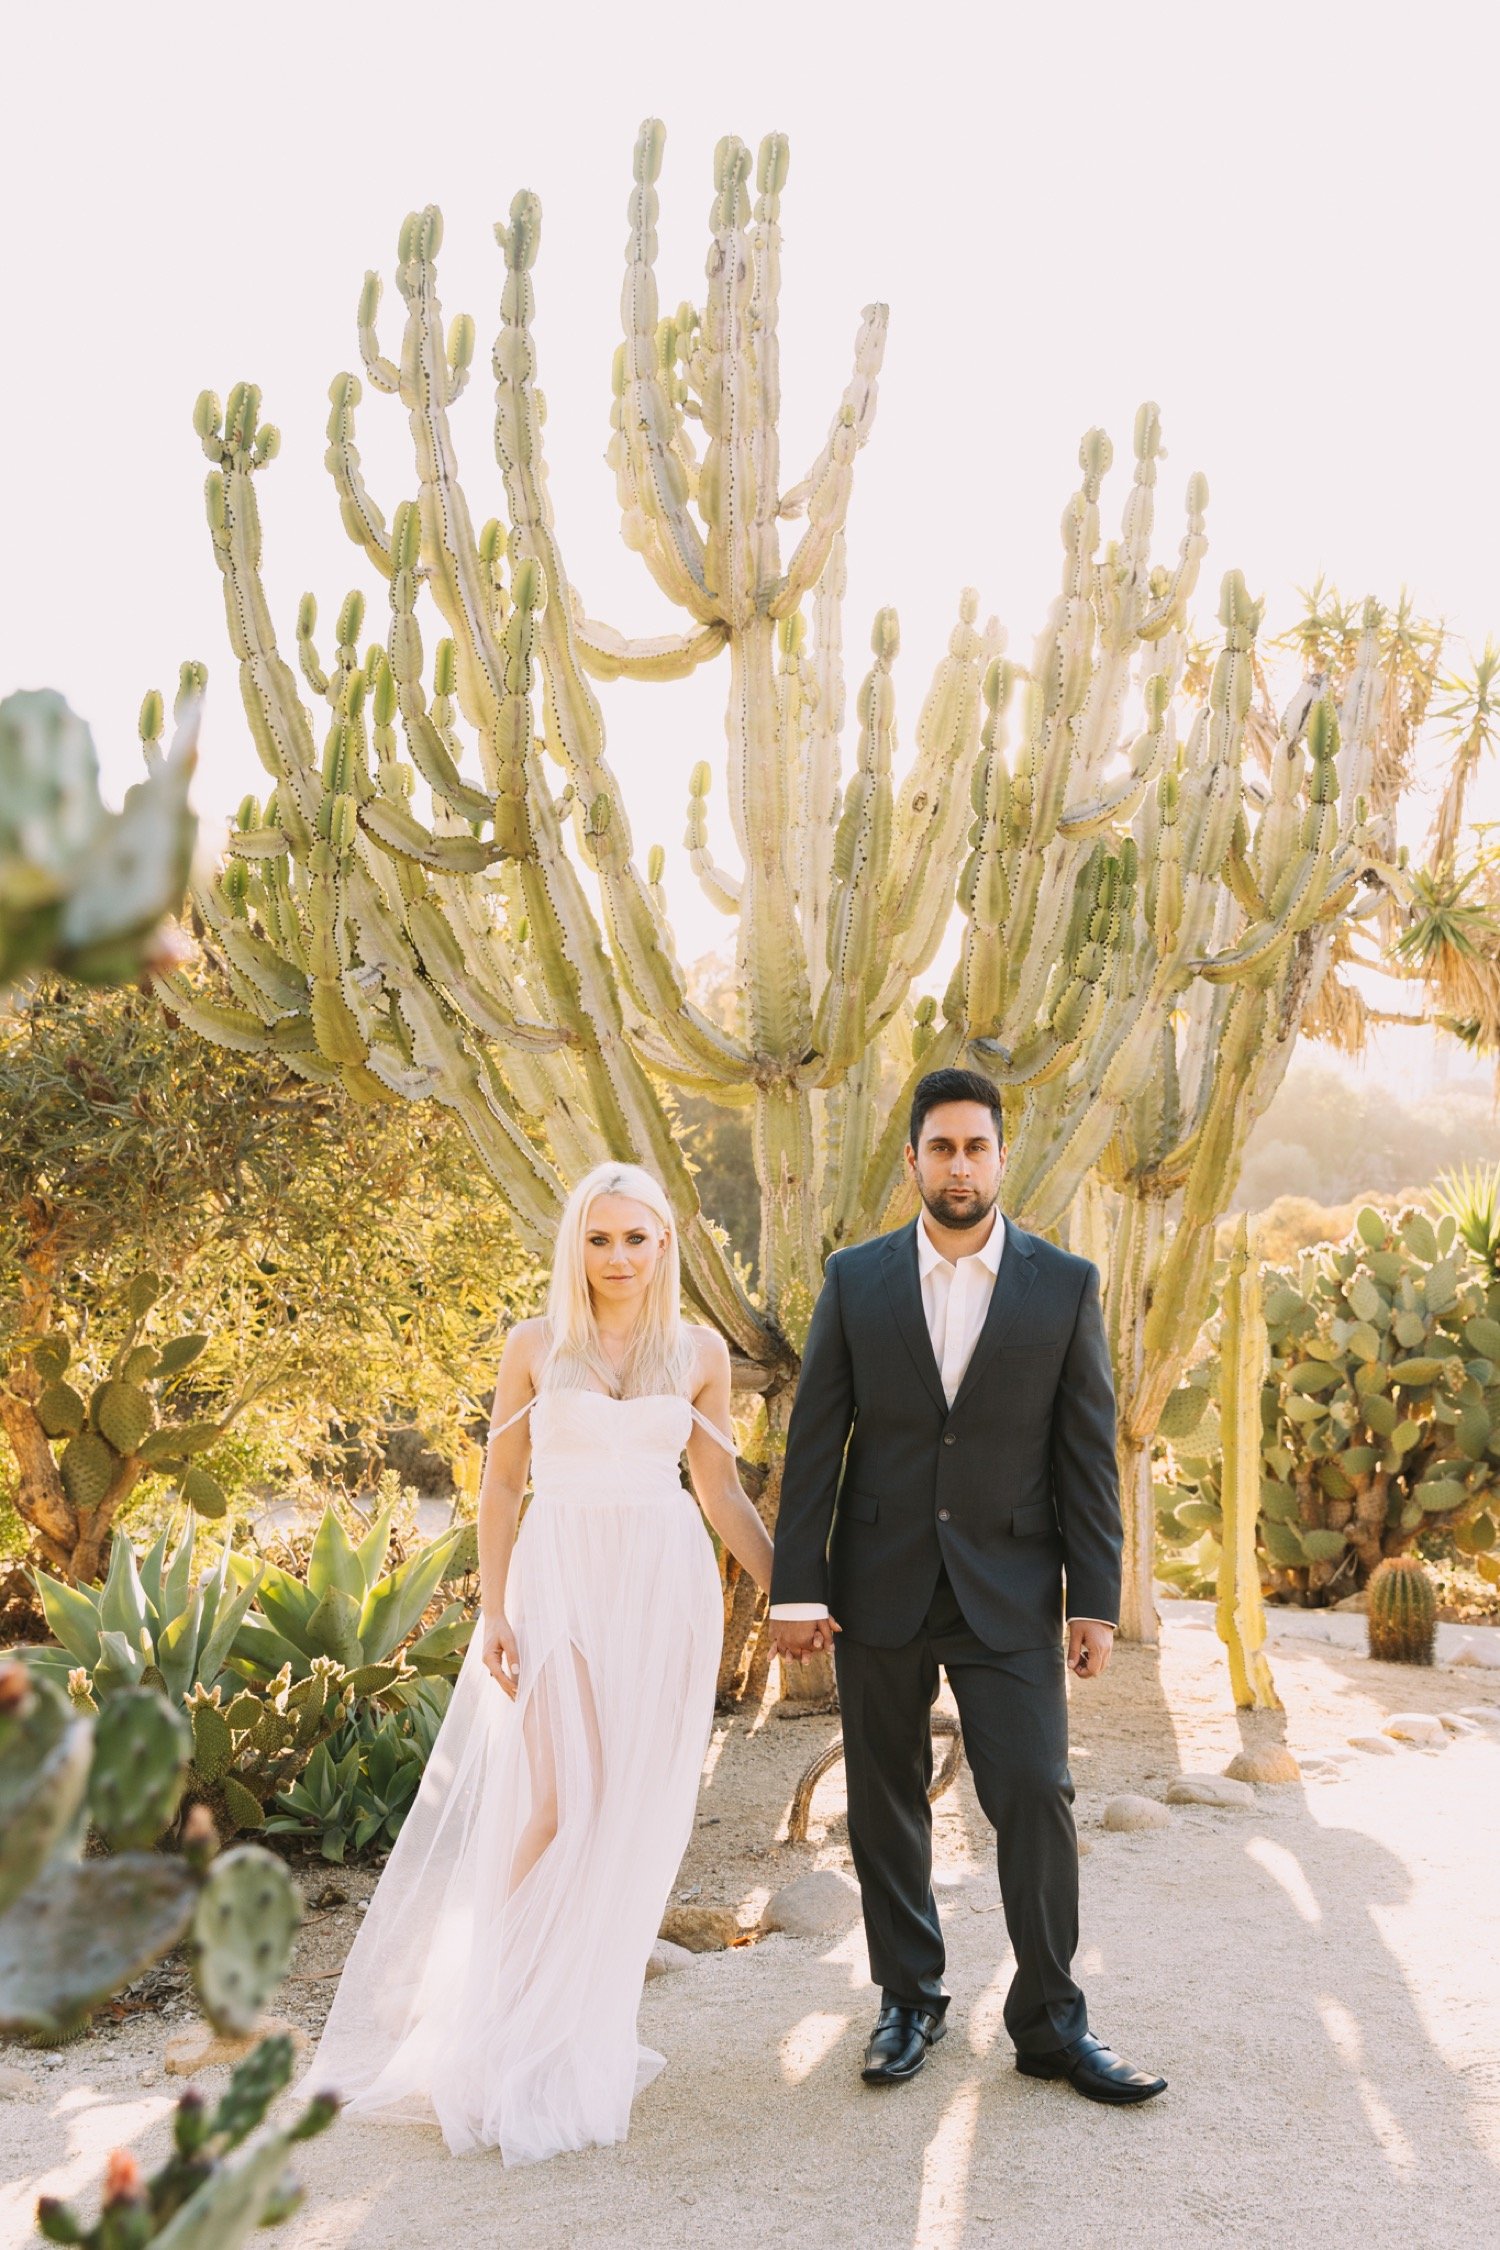 Dina Diaz California Wedding Photographer Old Cactus Garden Engagement Journal Post Image 3.jpg